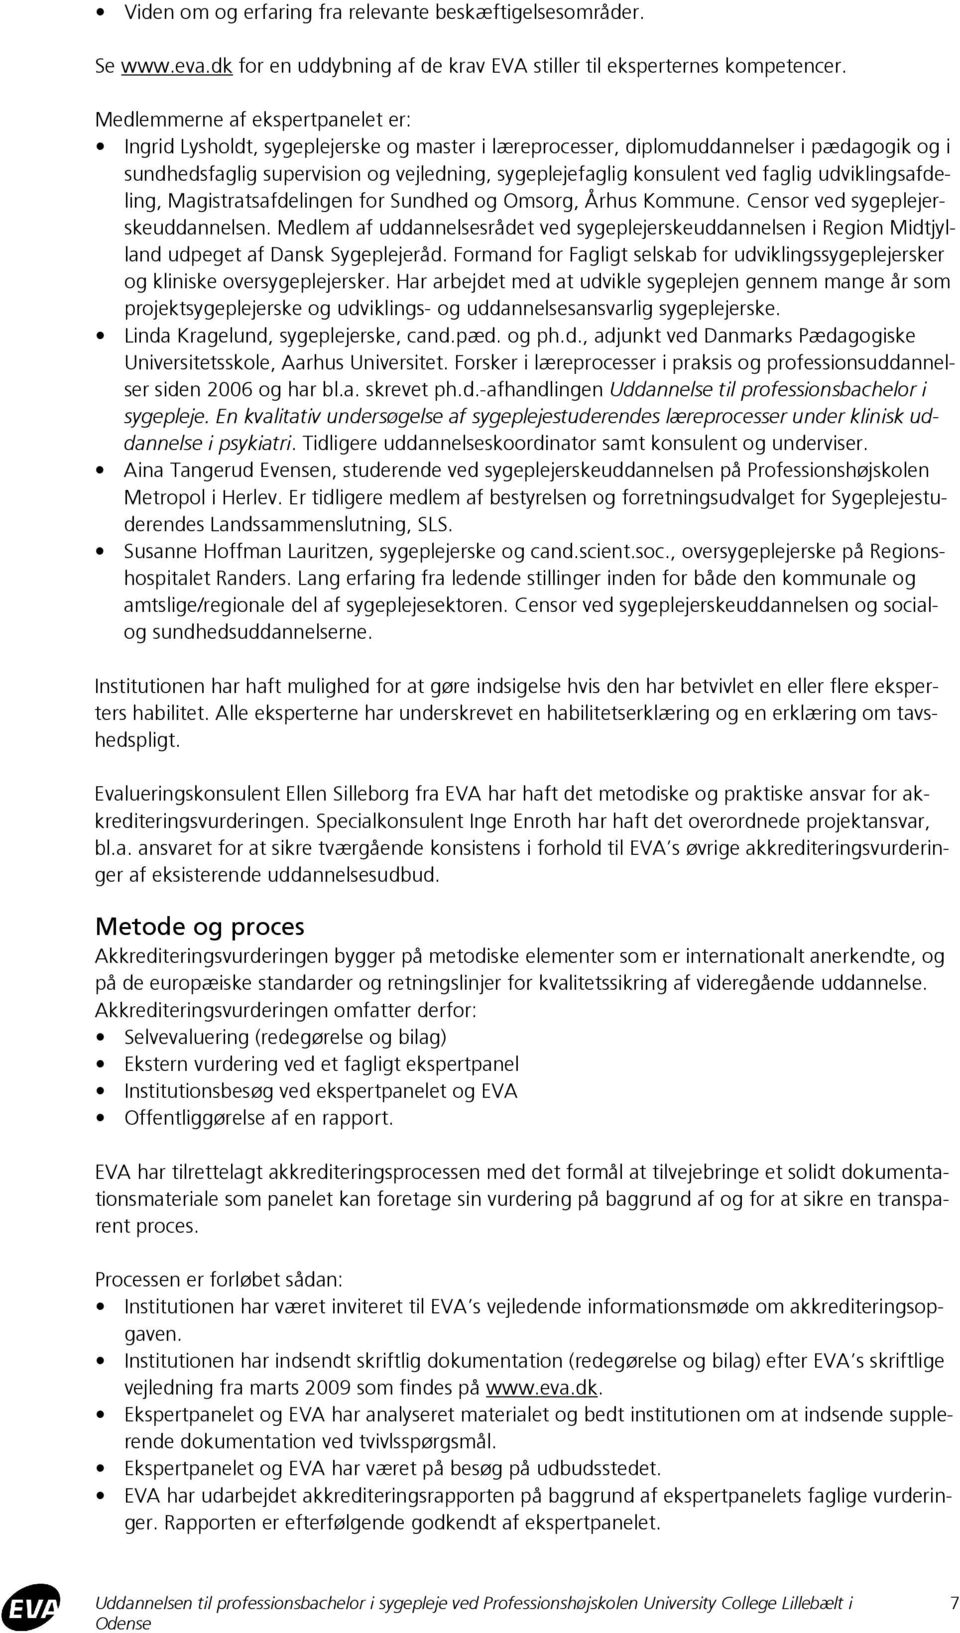 faglig udviklingsafdeling, Magistratsafdelingen for Sundhed og Omsorg, Århus Kommune. Censor ved sygeplejerskeuddannelsen.